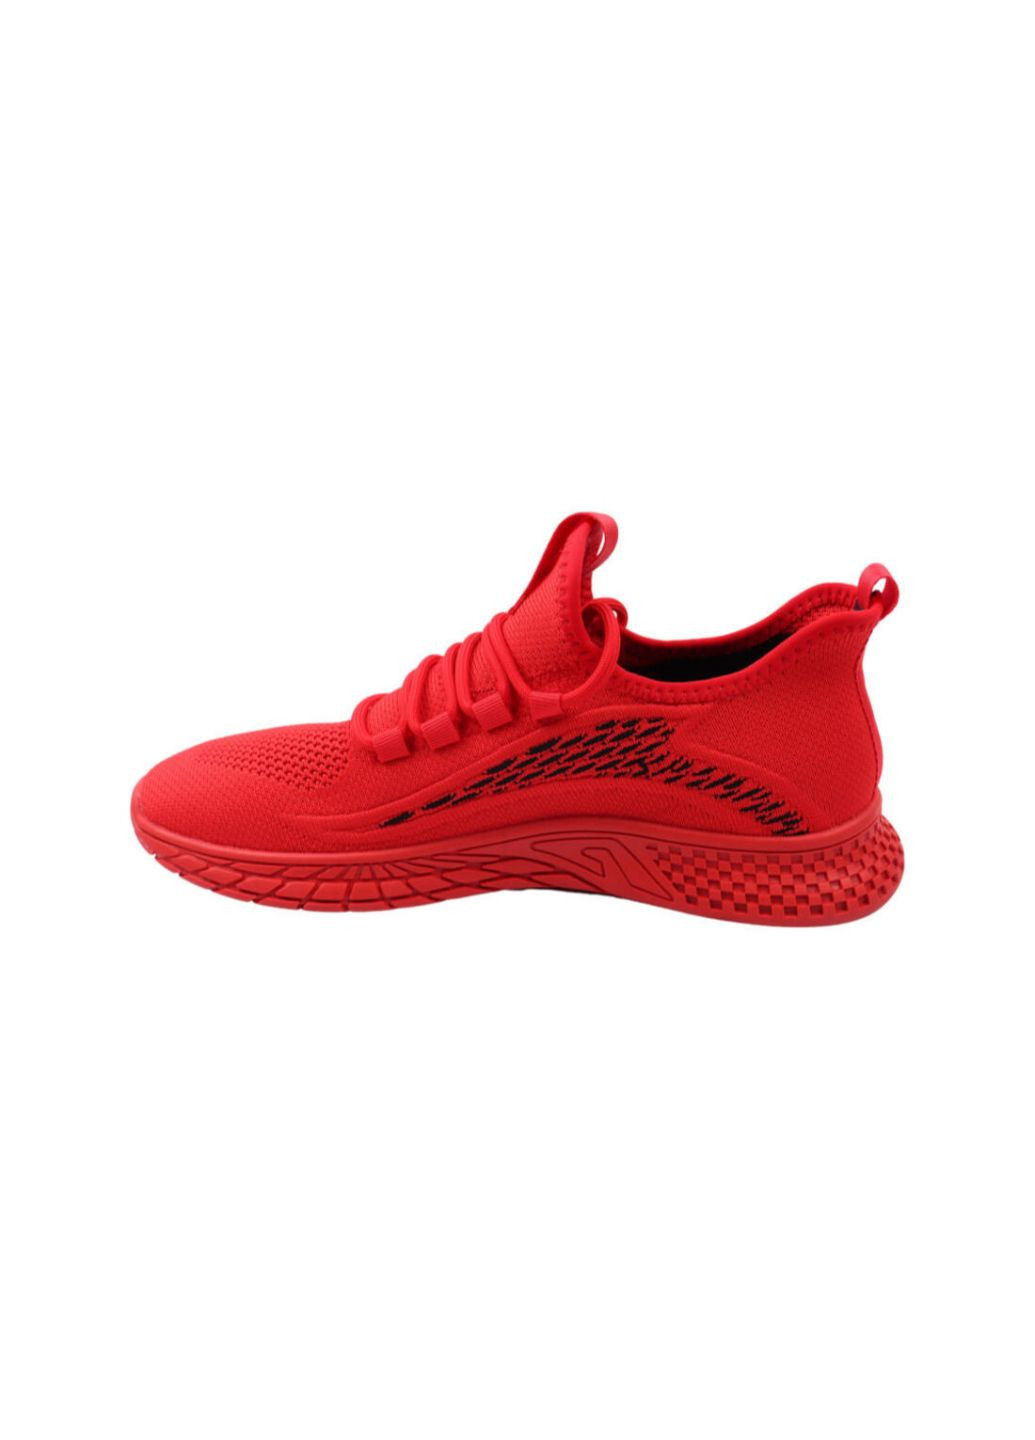 Червоні кросівки чоловічі червоні текстиль Berisstini 71-22LK